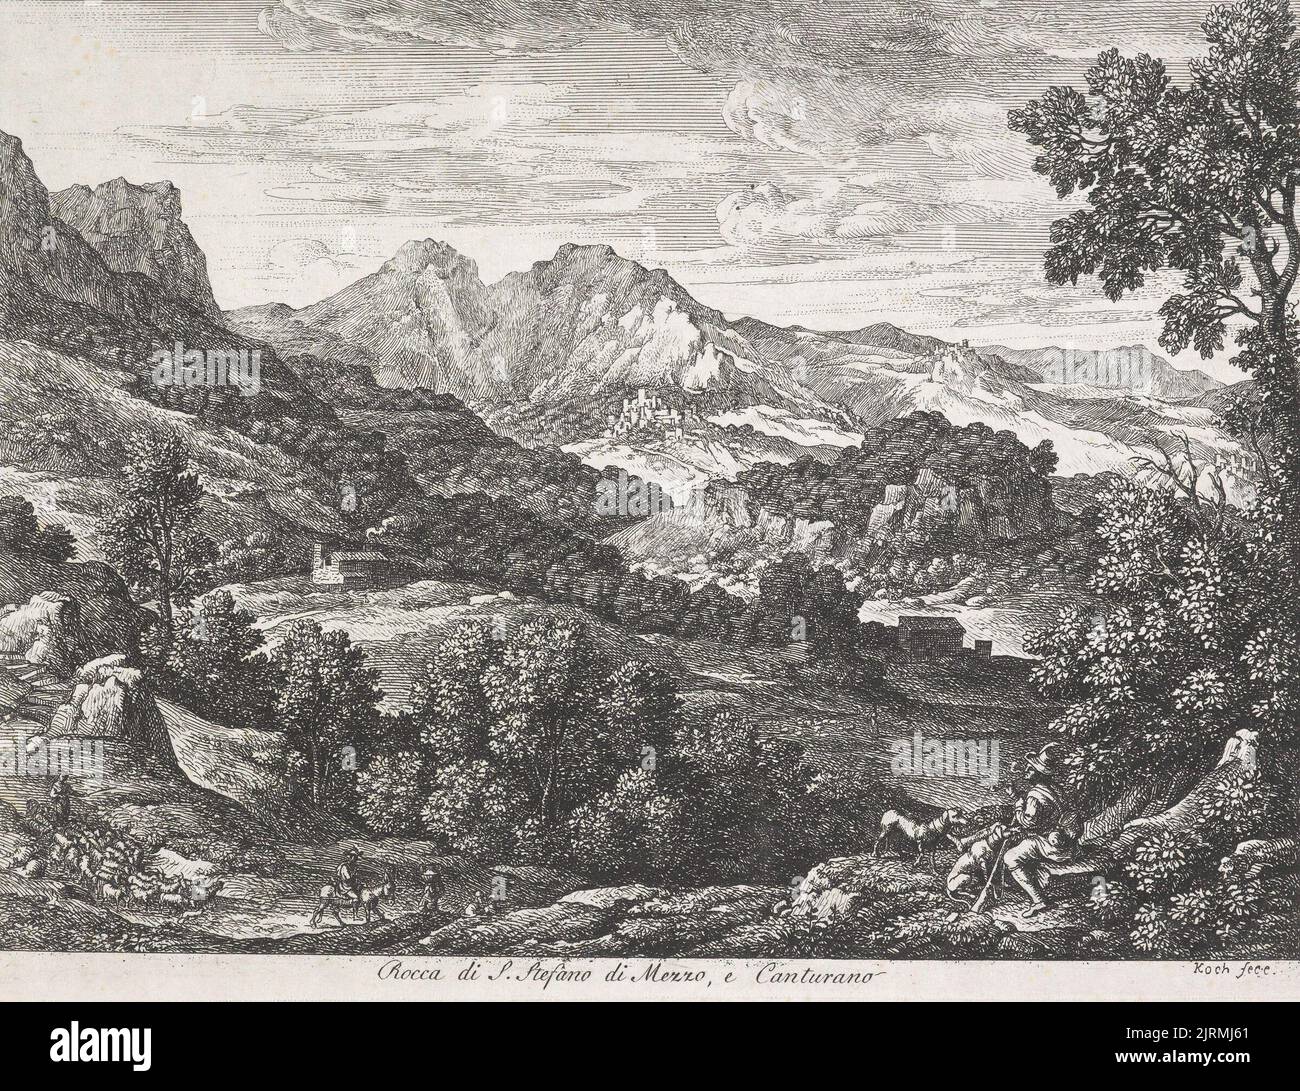 Die Römischen Ansichten (Views of Rome)/ Rocca di S. Stefano di Mezzo, e Canturano., 1810, Italy, by Joseph Koch. Gift of Bishop Monrad, 1869. Stock Photo